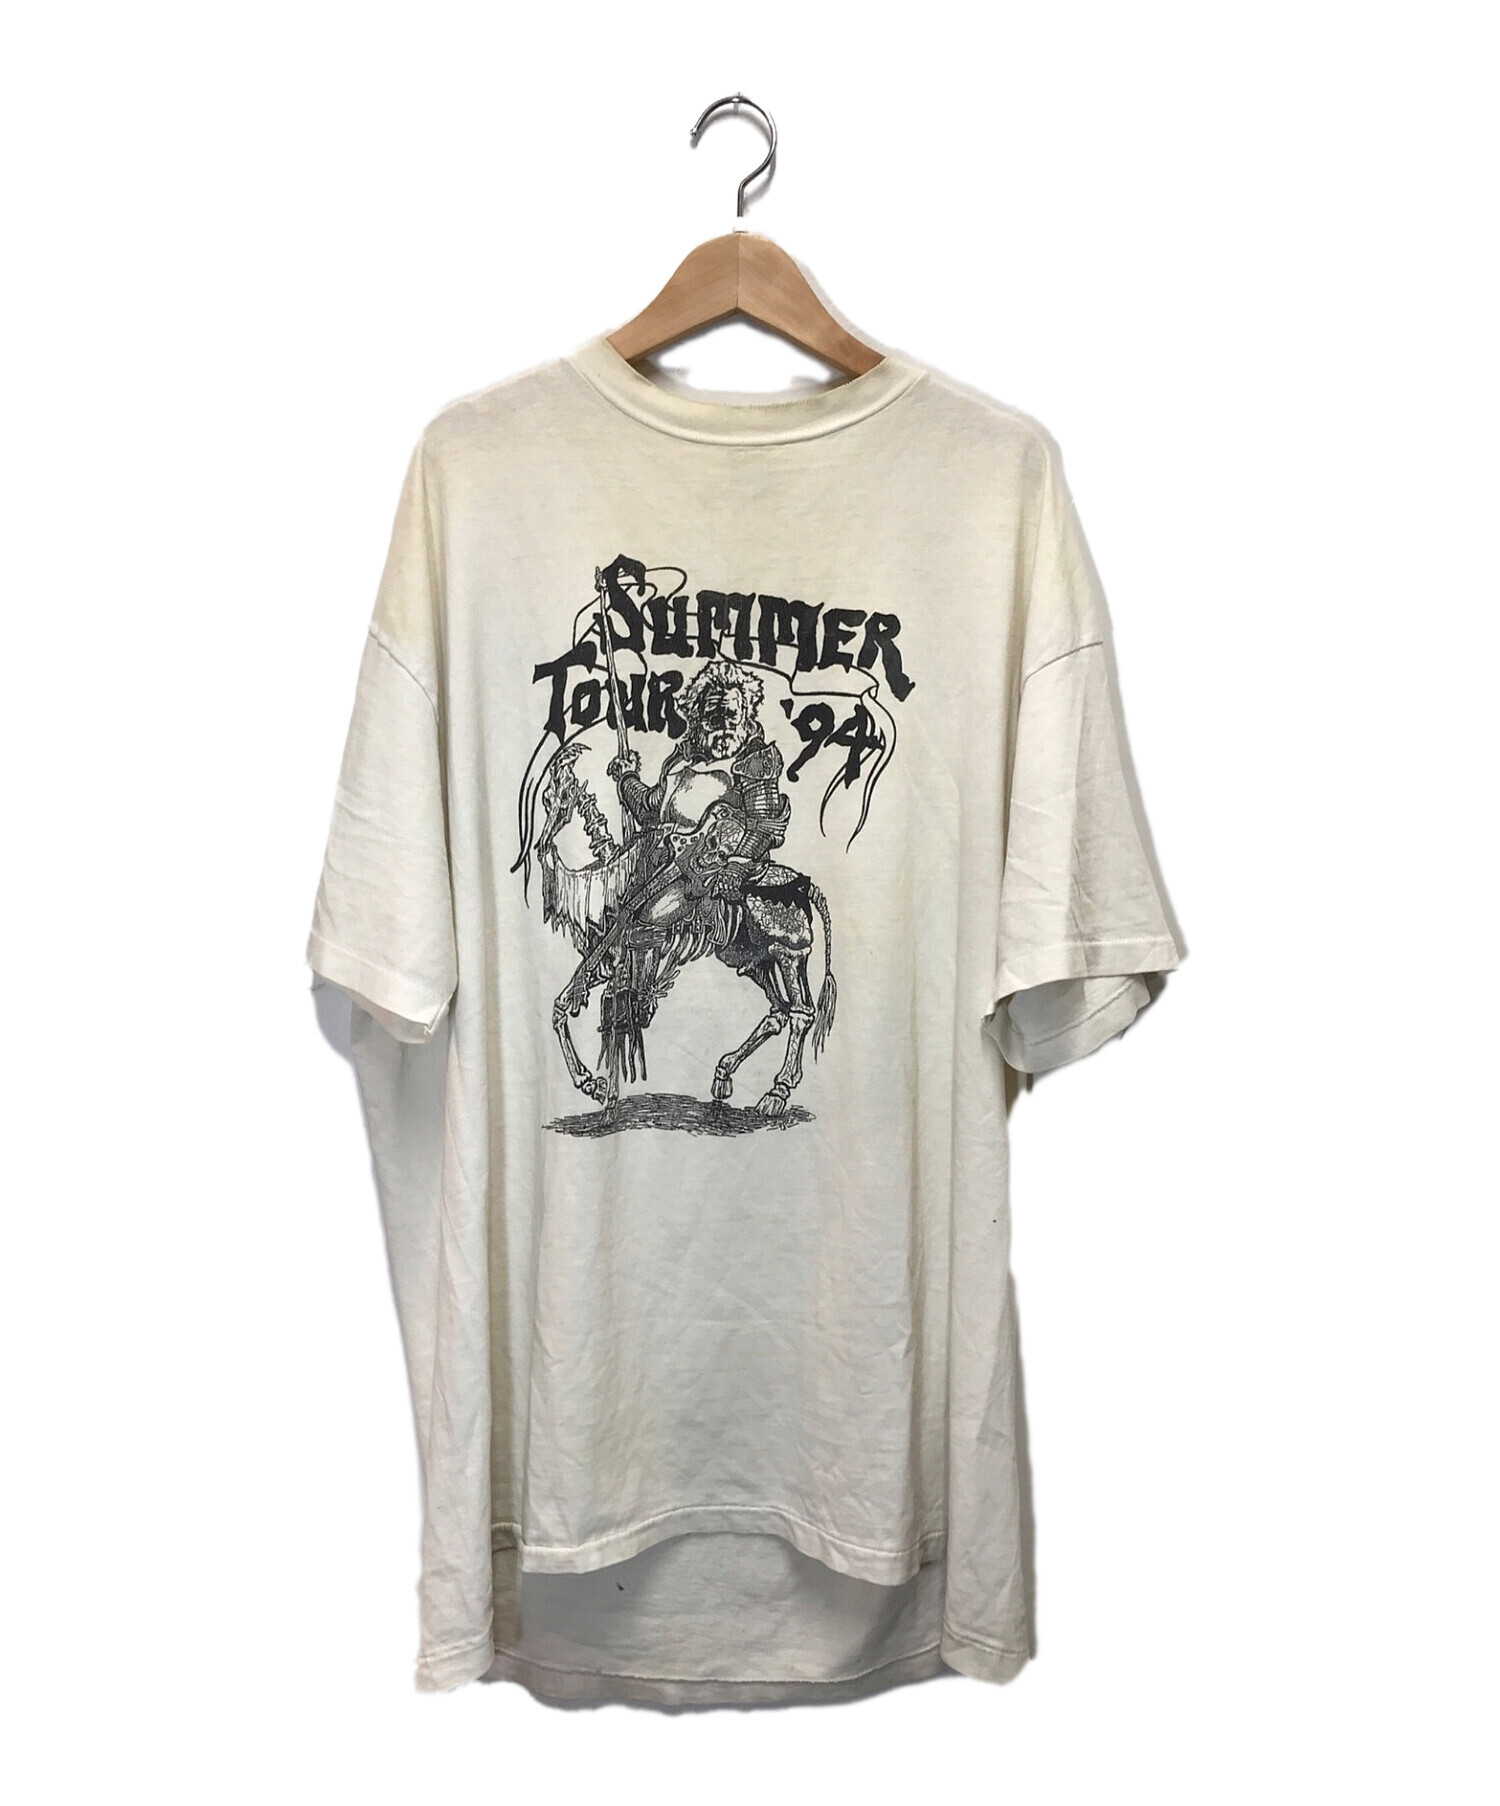 GRATEFUL DEAD (グレイトフル・デッド) 90’sヴィンテージバンドTシャツ ホワイト サイズ:XL